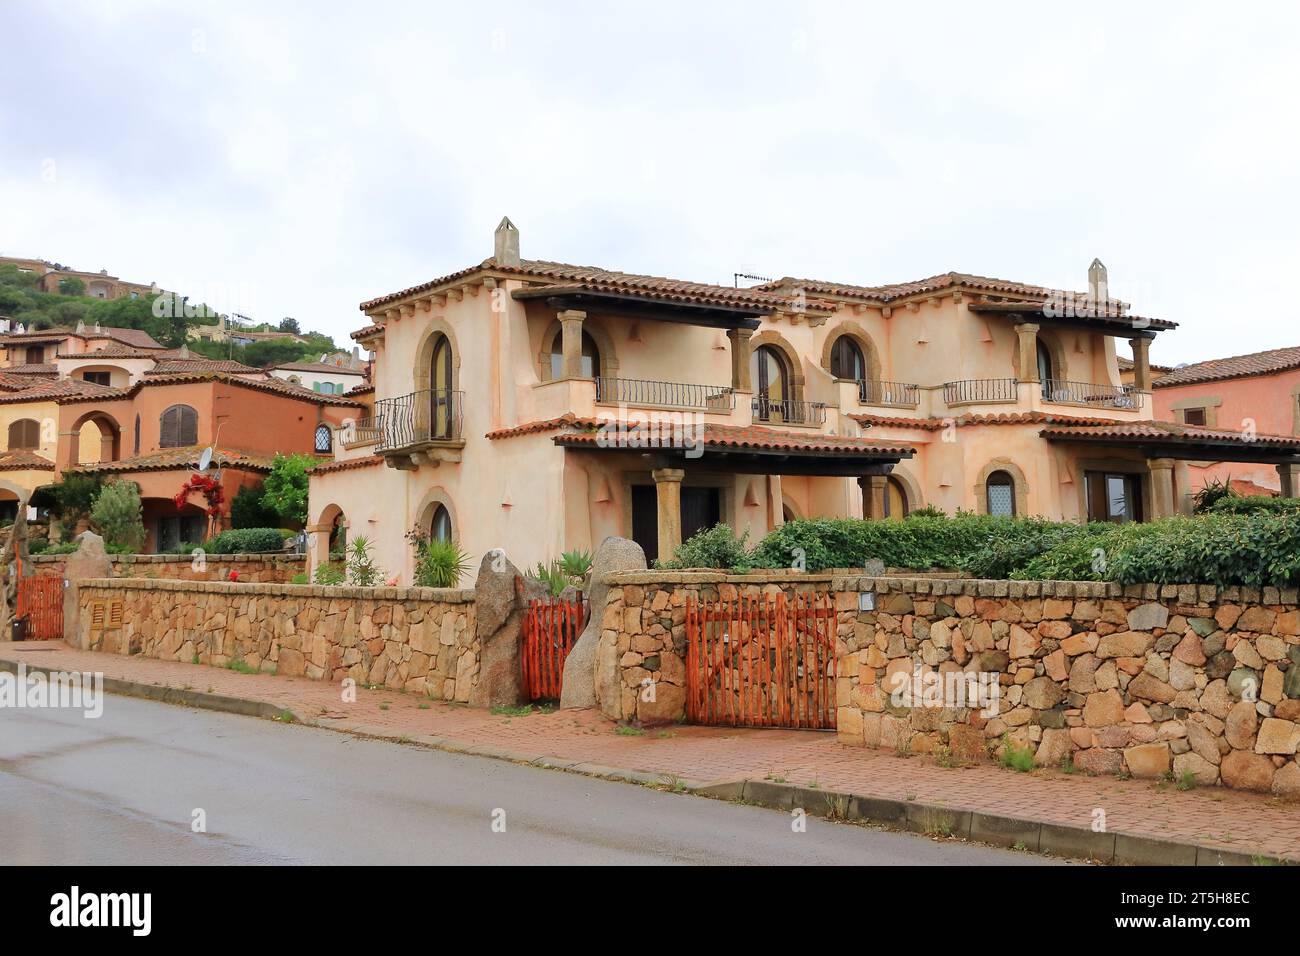 Maisons italiennes colorées traditionnelles typiques en Sardaigne en Italie Banque D'Images